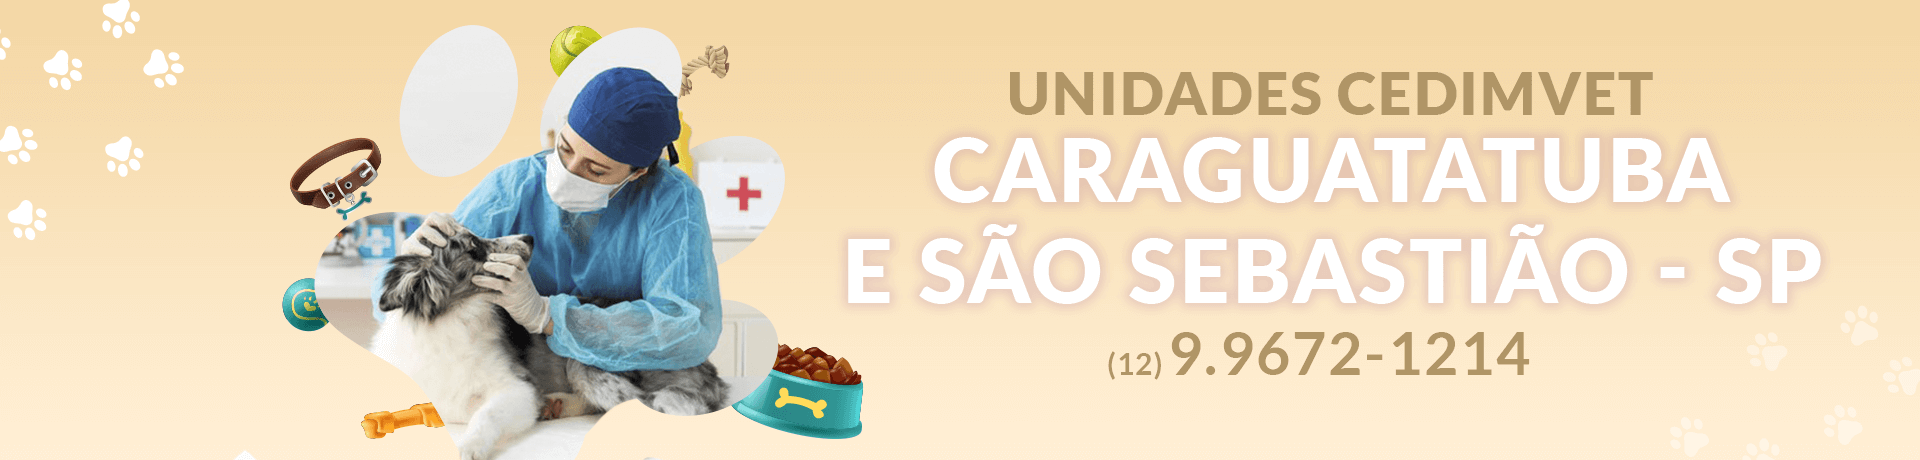 Unidade de Caraguatatuba e São Sebastião - SP